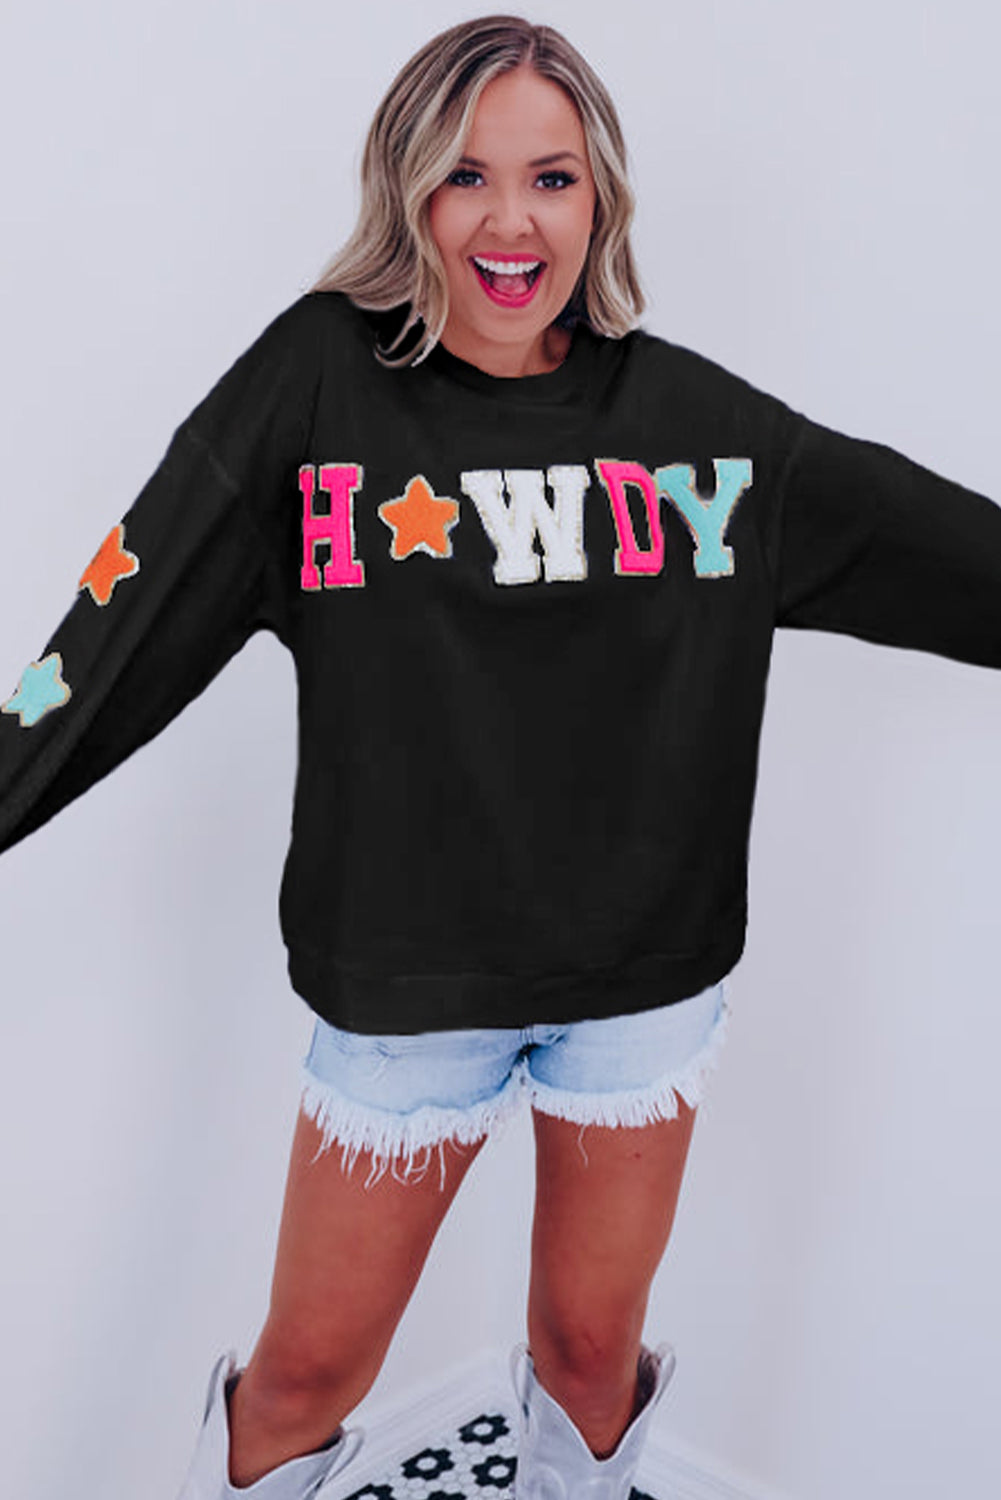 Schwarzes Howdy Freizeit-Sweatshirt mit glitzerndem Chenille-Aufnäher und Grafik